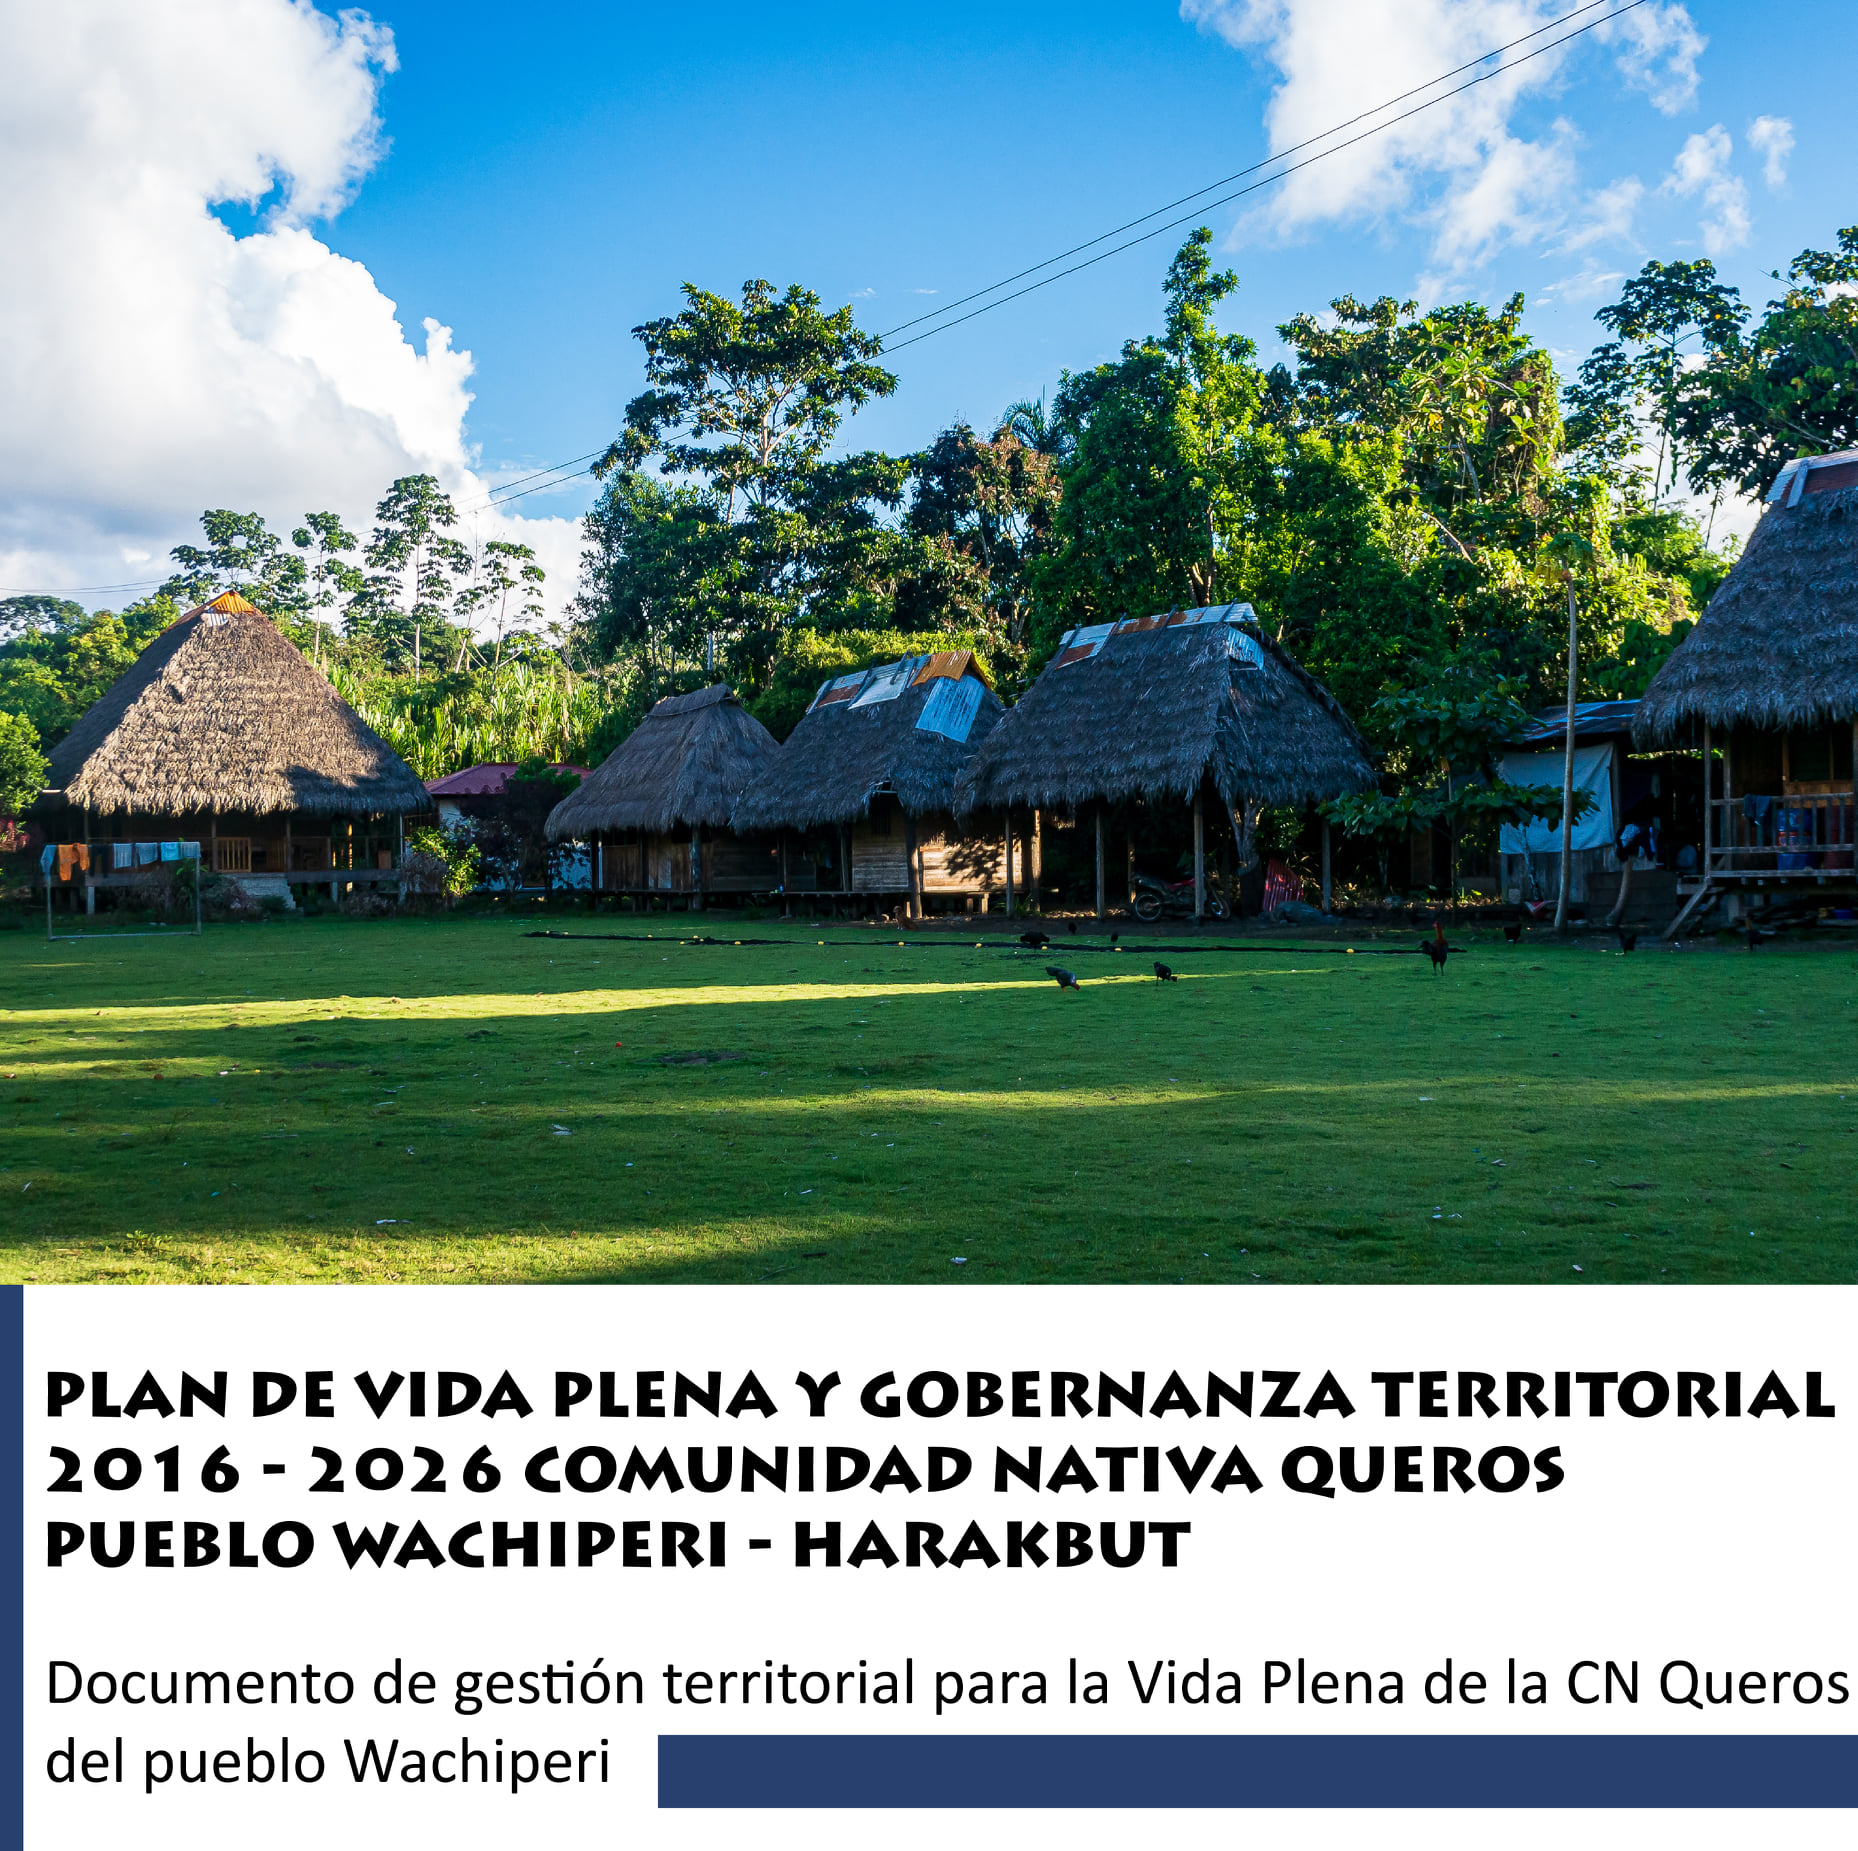 Plan de vida plena y gobernanza territorial de la comunidad nativa Queros Wachiperi